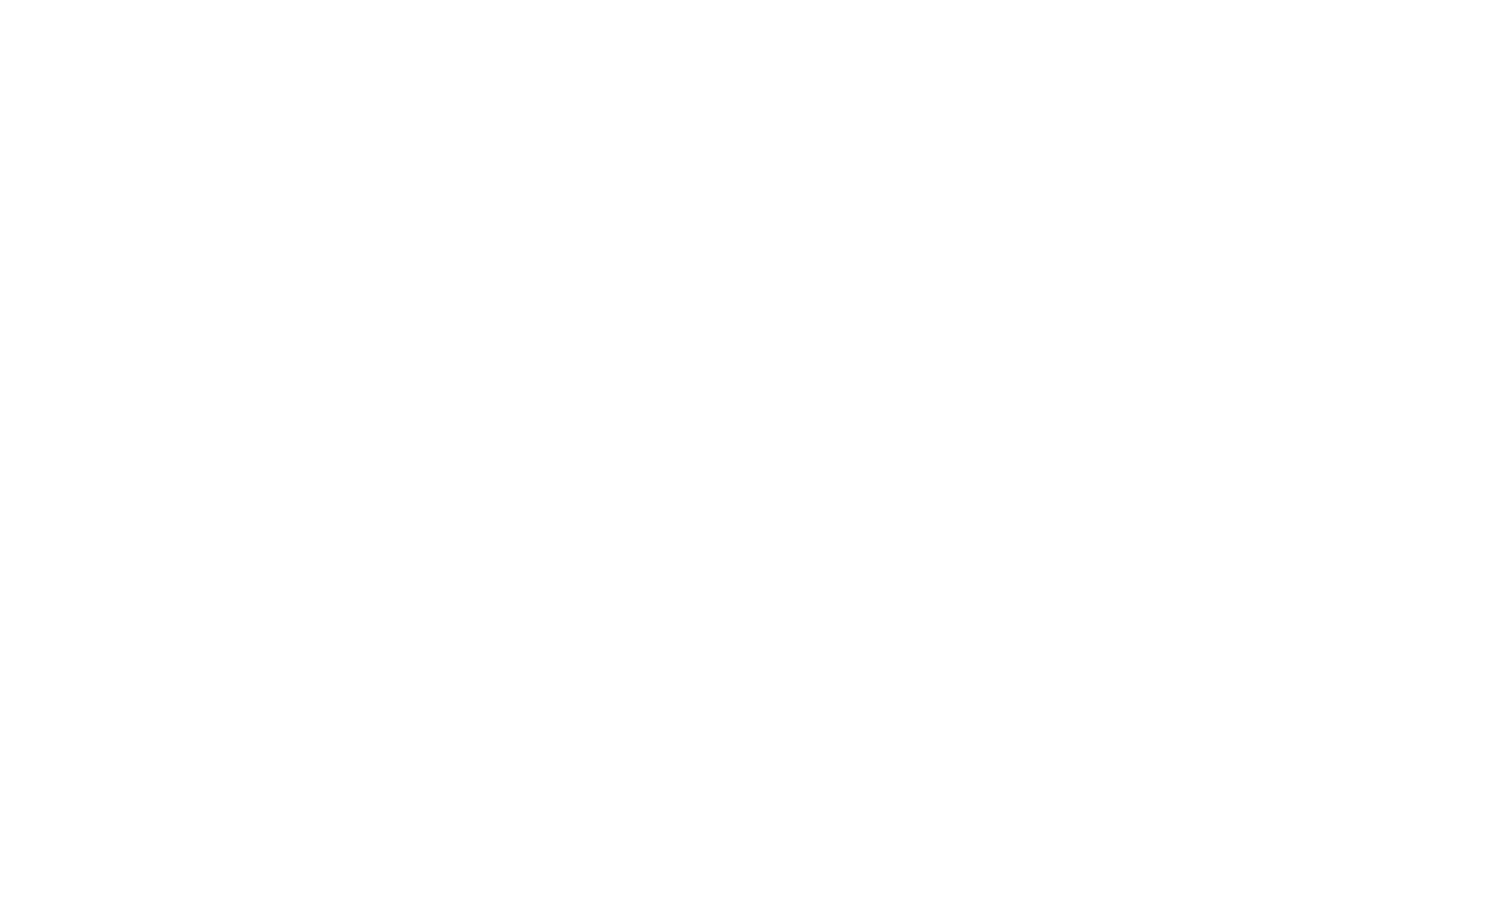 Adam Breneman